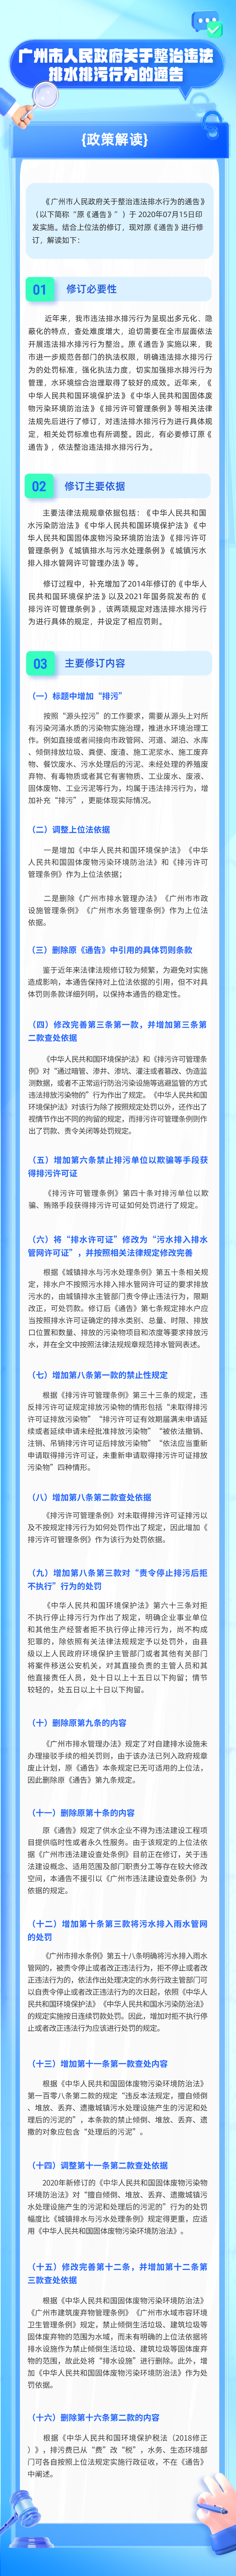 一图读懂《广州市人民政府关于整治违法排水排污行为的通告》0319.png